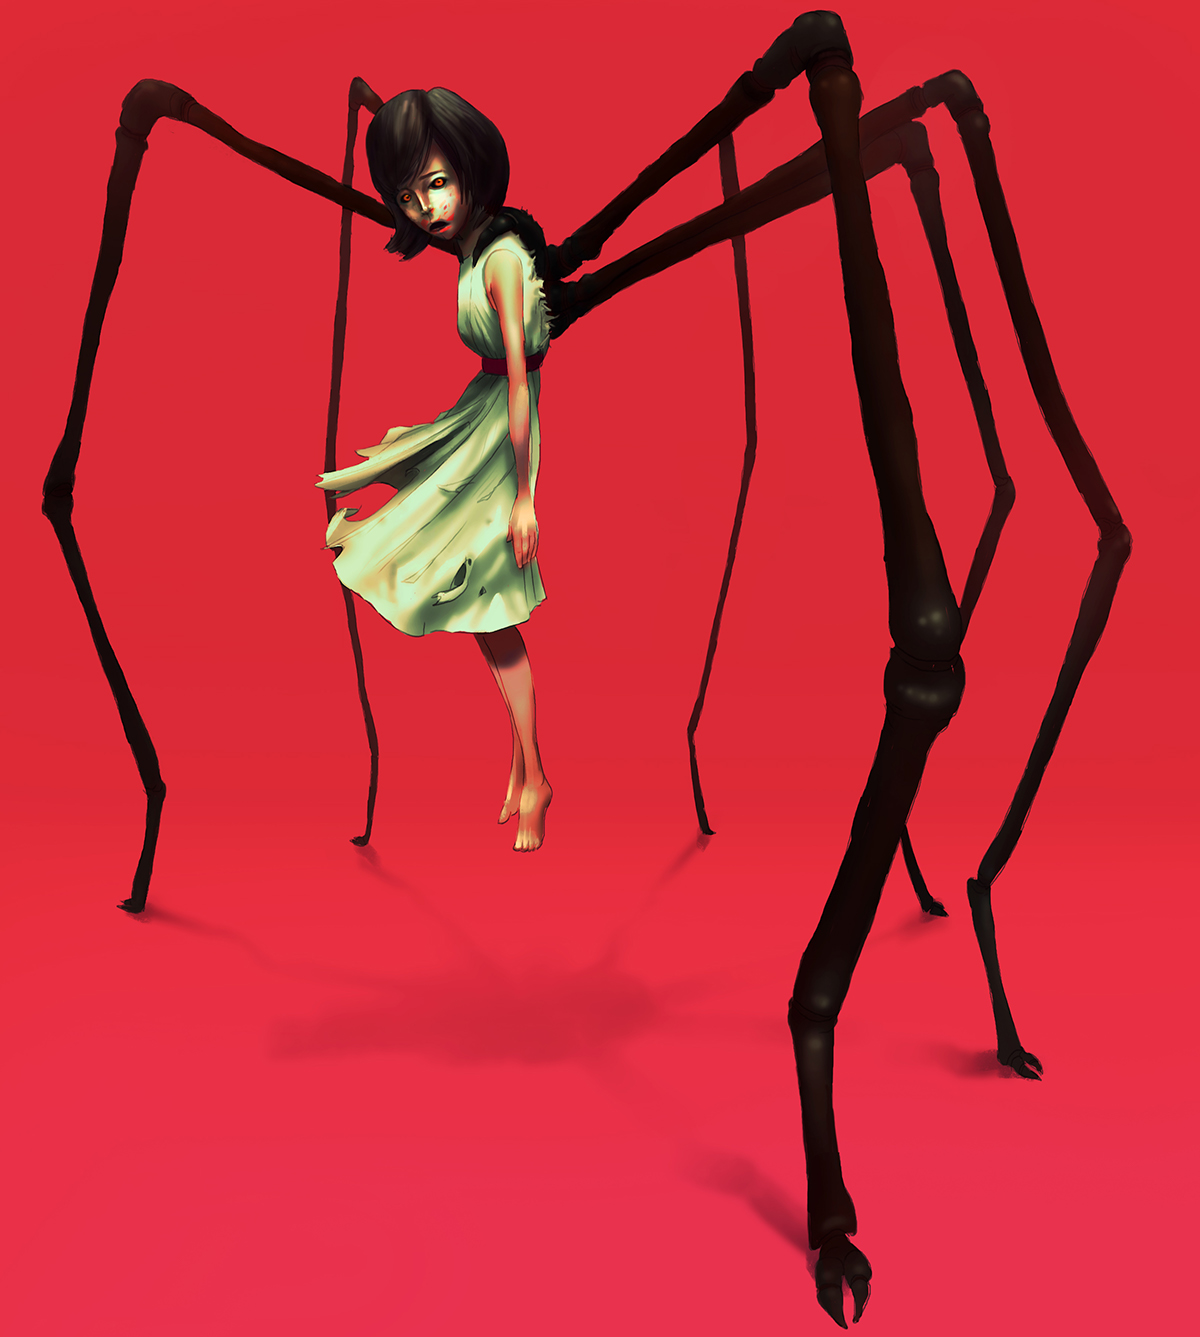 Spider girl parasite parasite girl gross horror tick giant tick